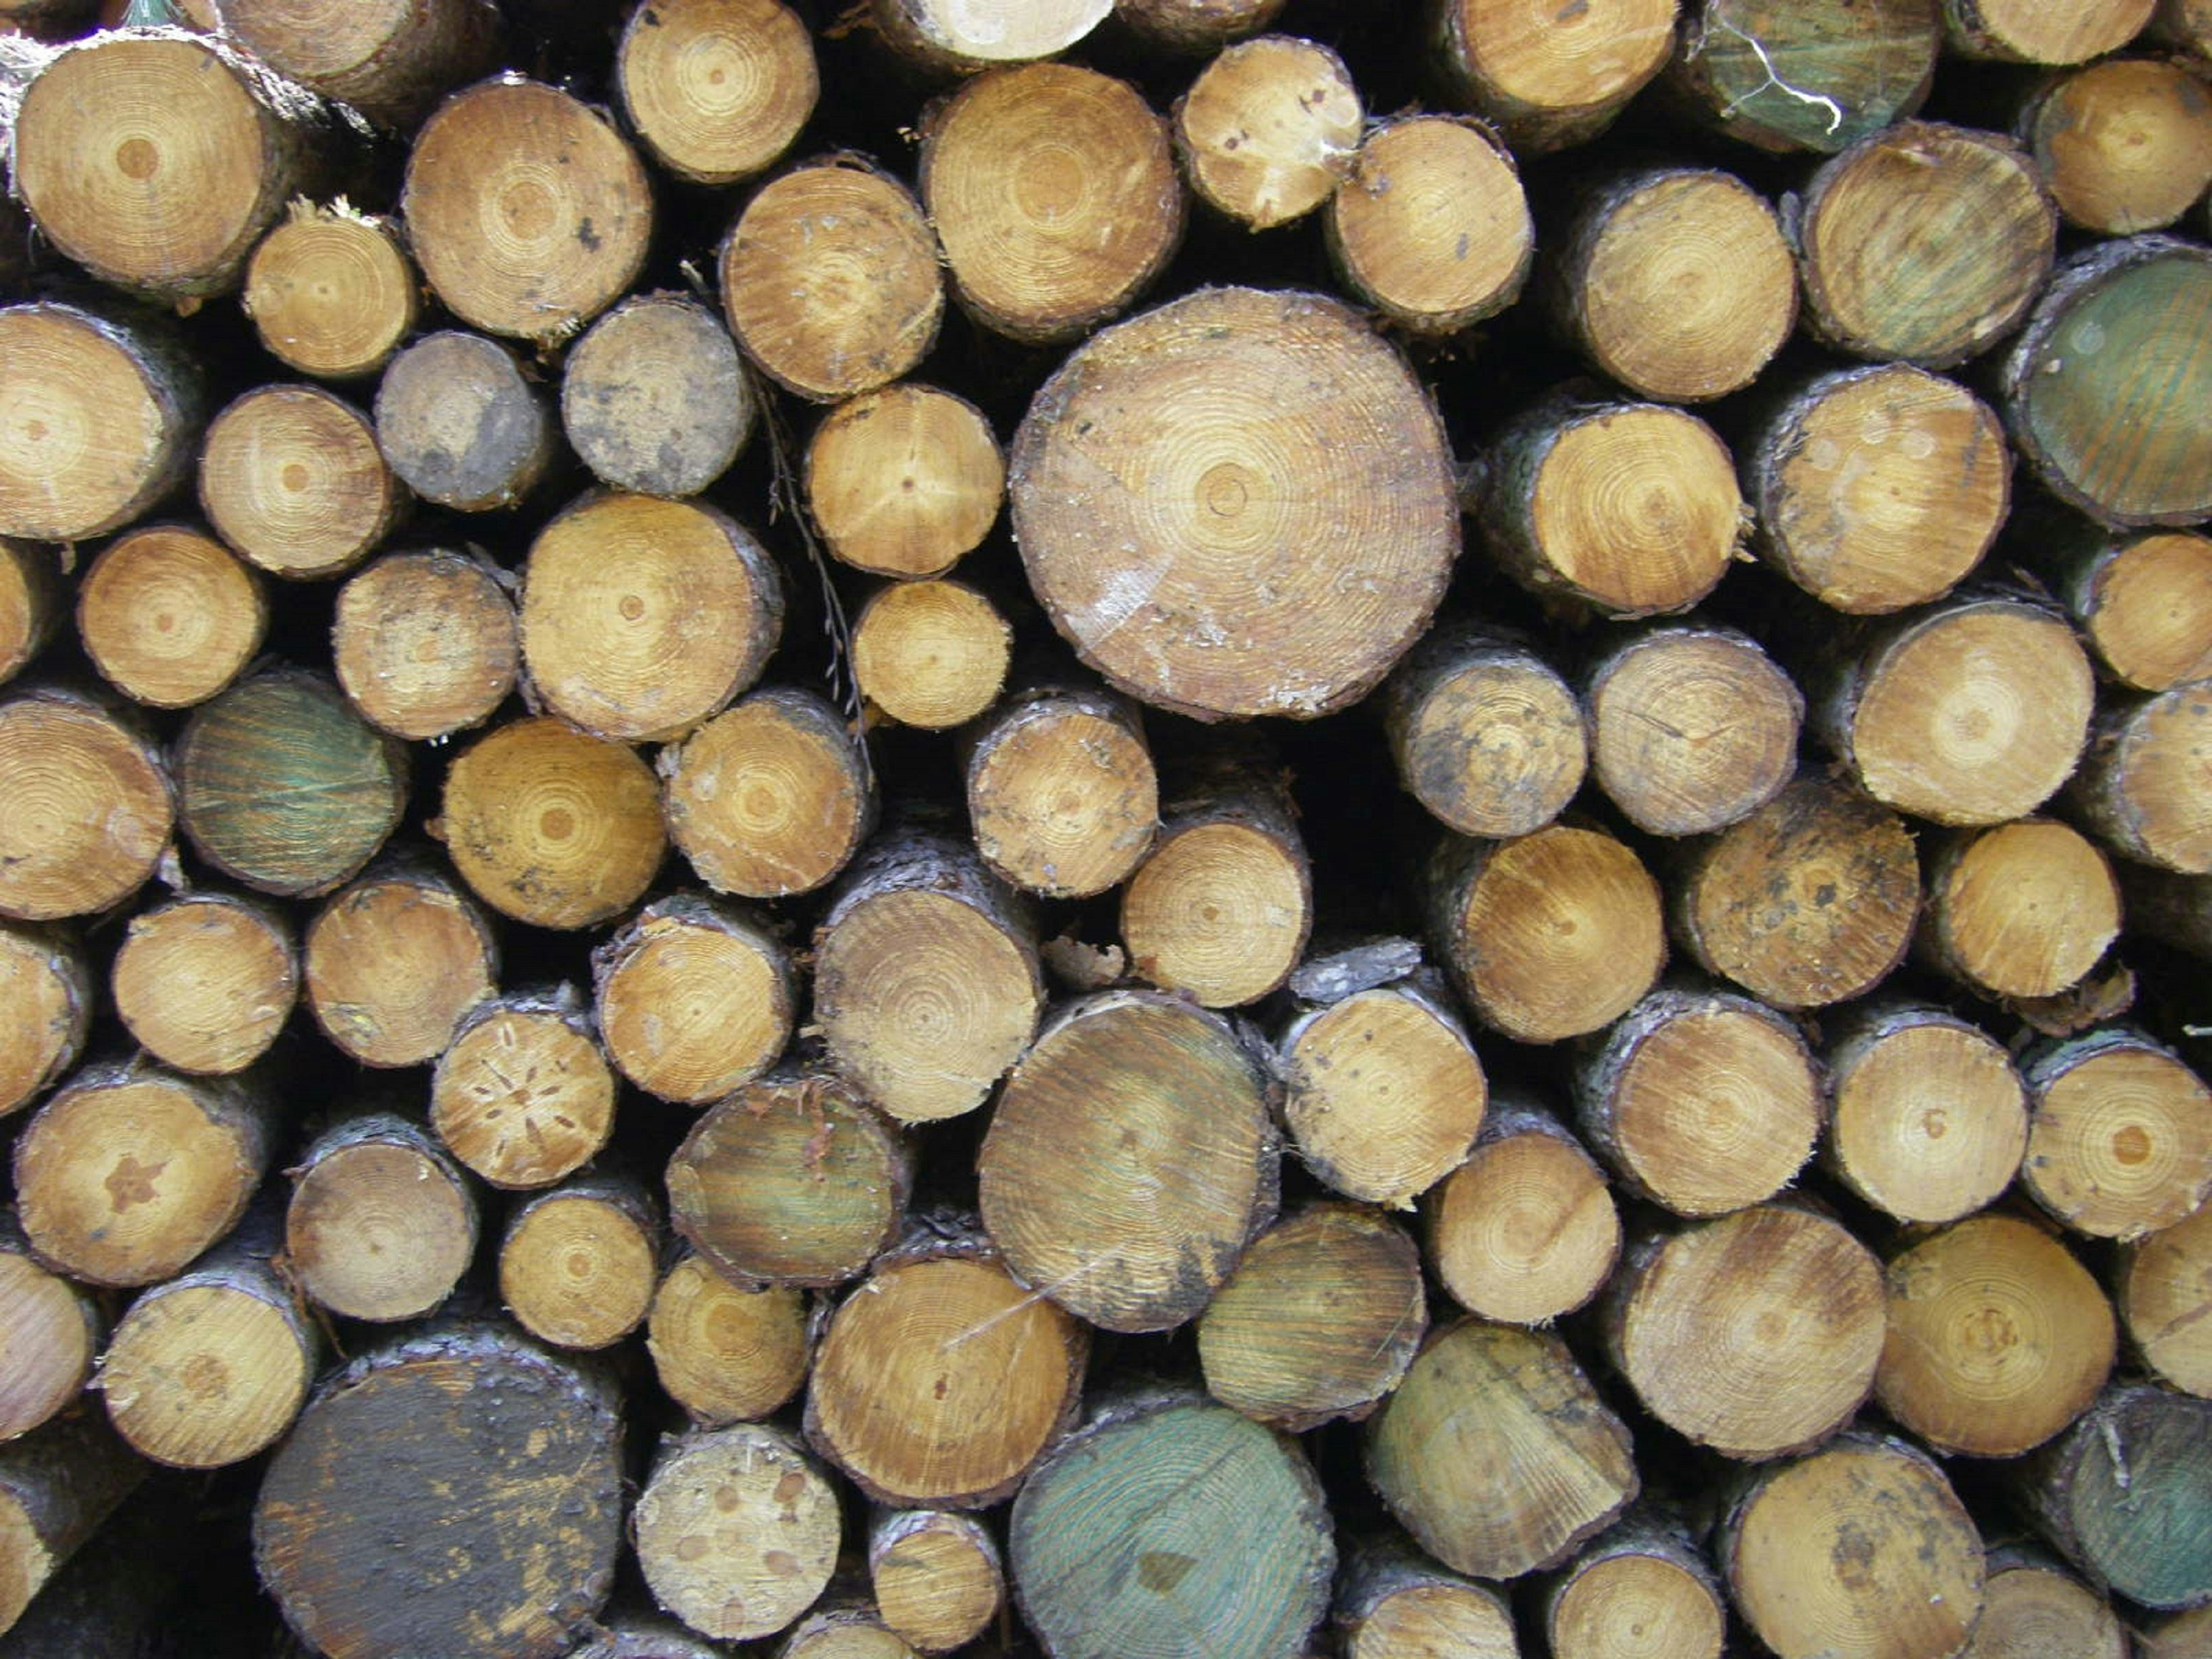 Brown and tan circular ends of cut logs